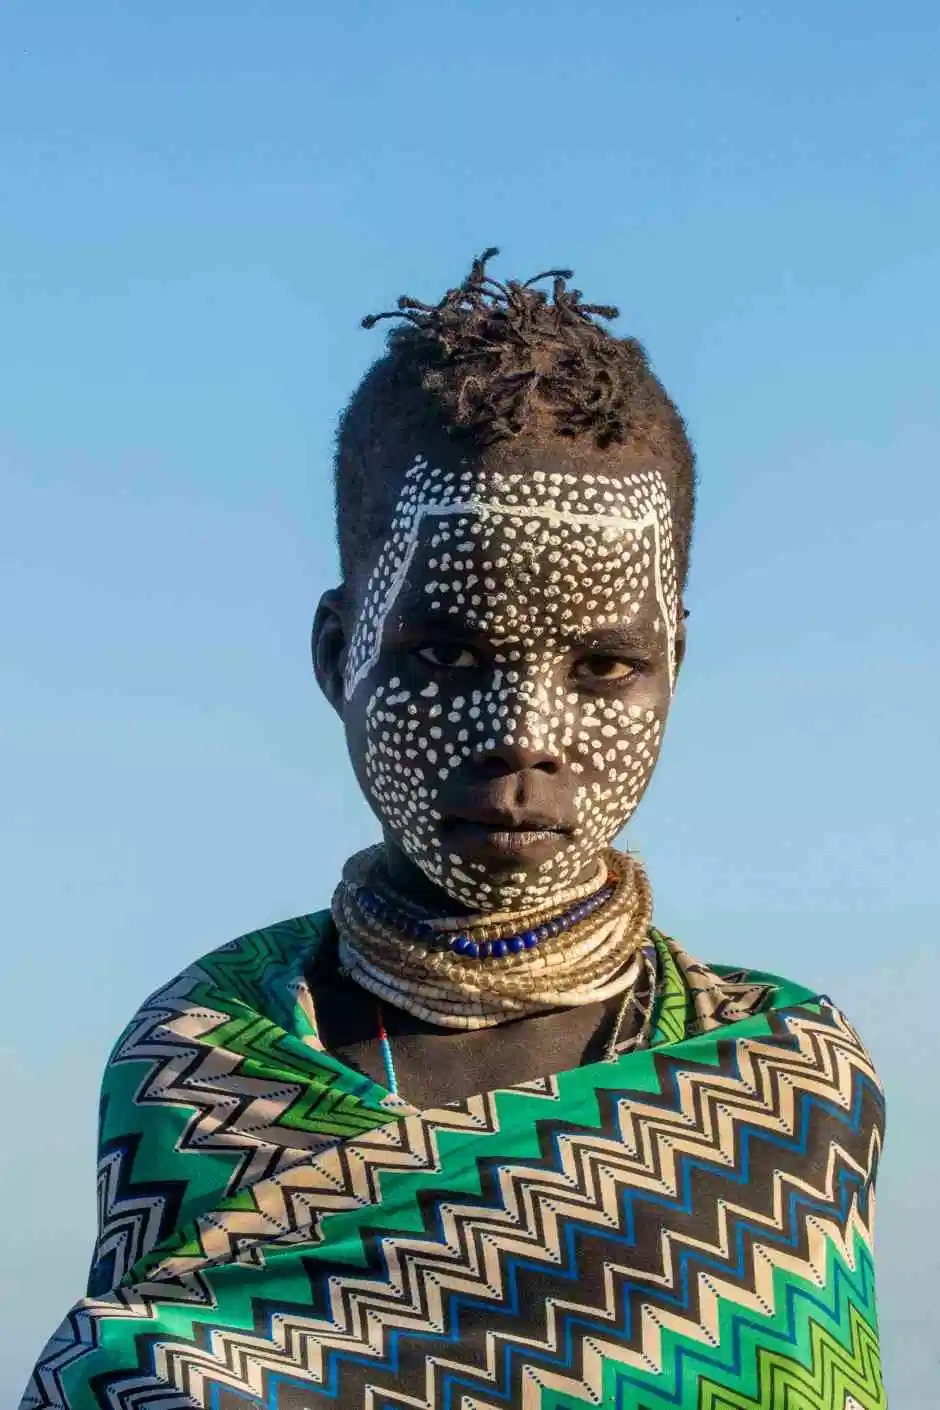  Боевой раскрас и дикие суеверия: удивительные фотографии племени каро. ФОТО